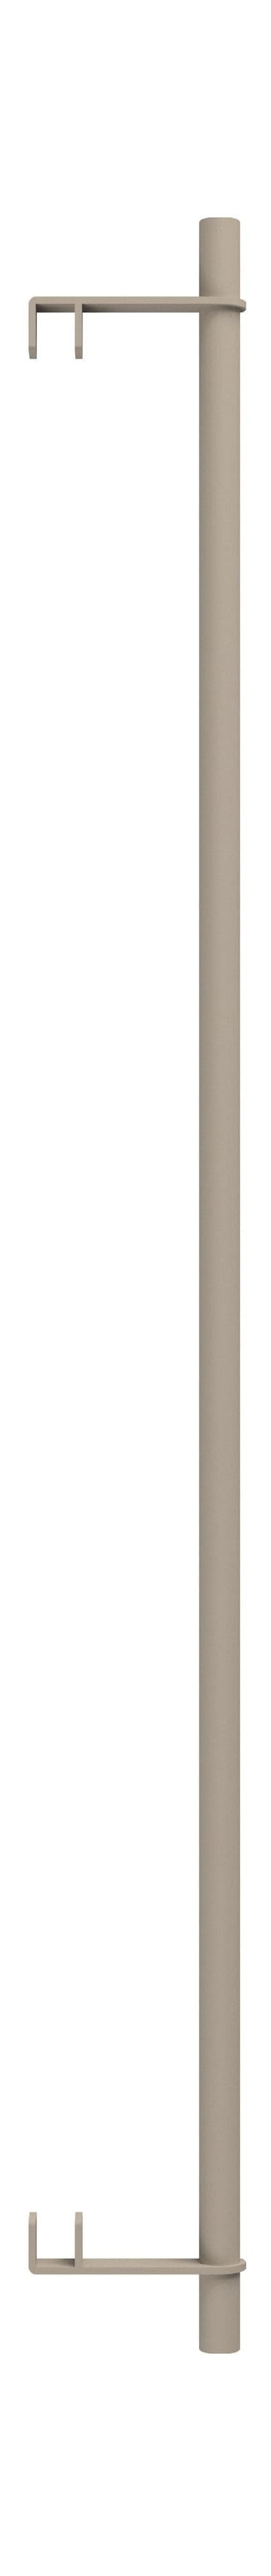 Moebe hyllsystem/vägghyllkläder bar 85 cm, varm grå